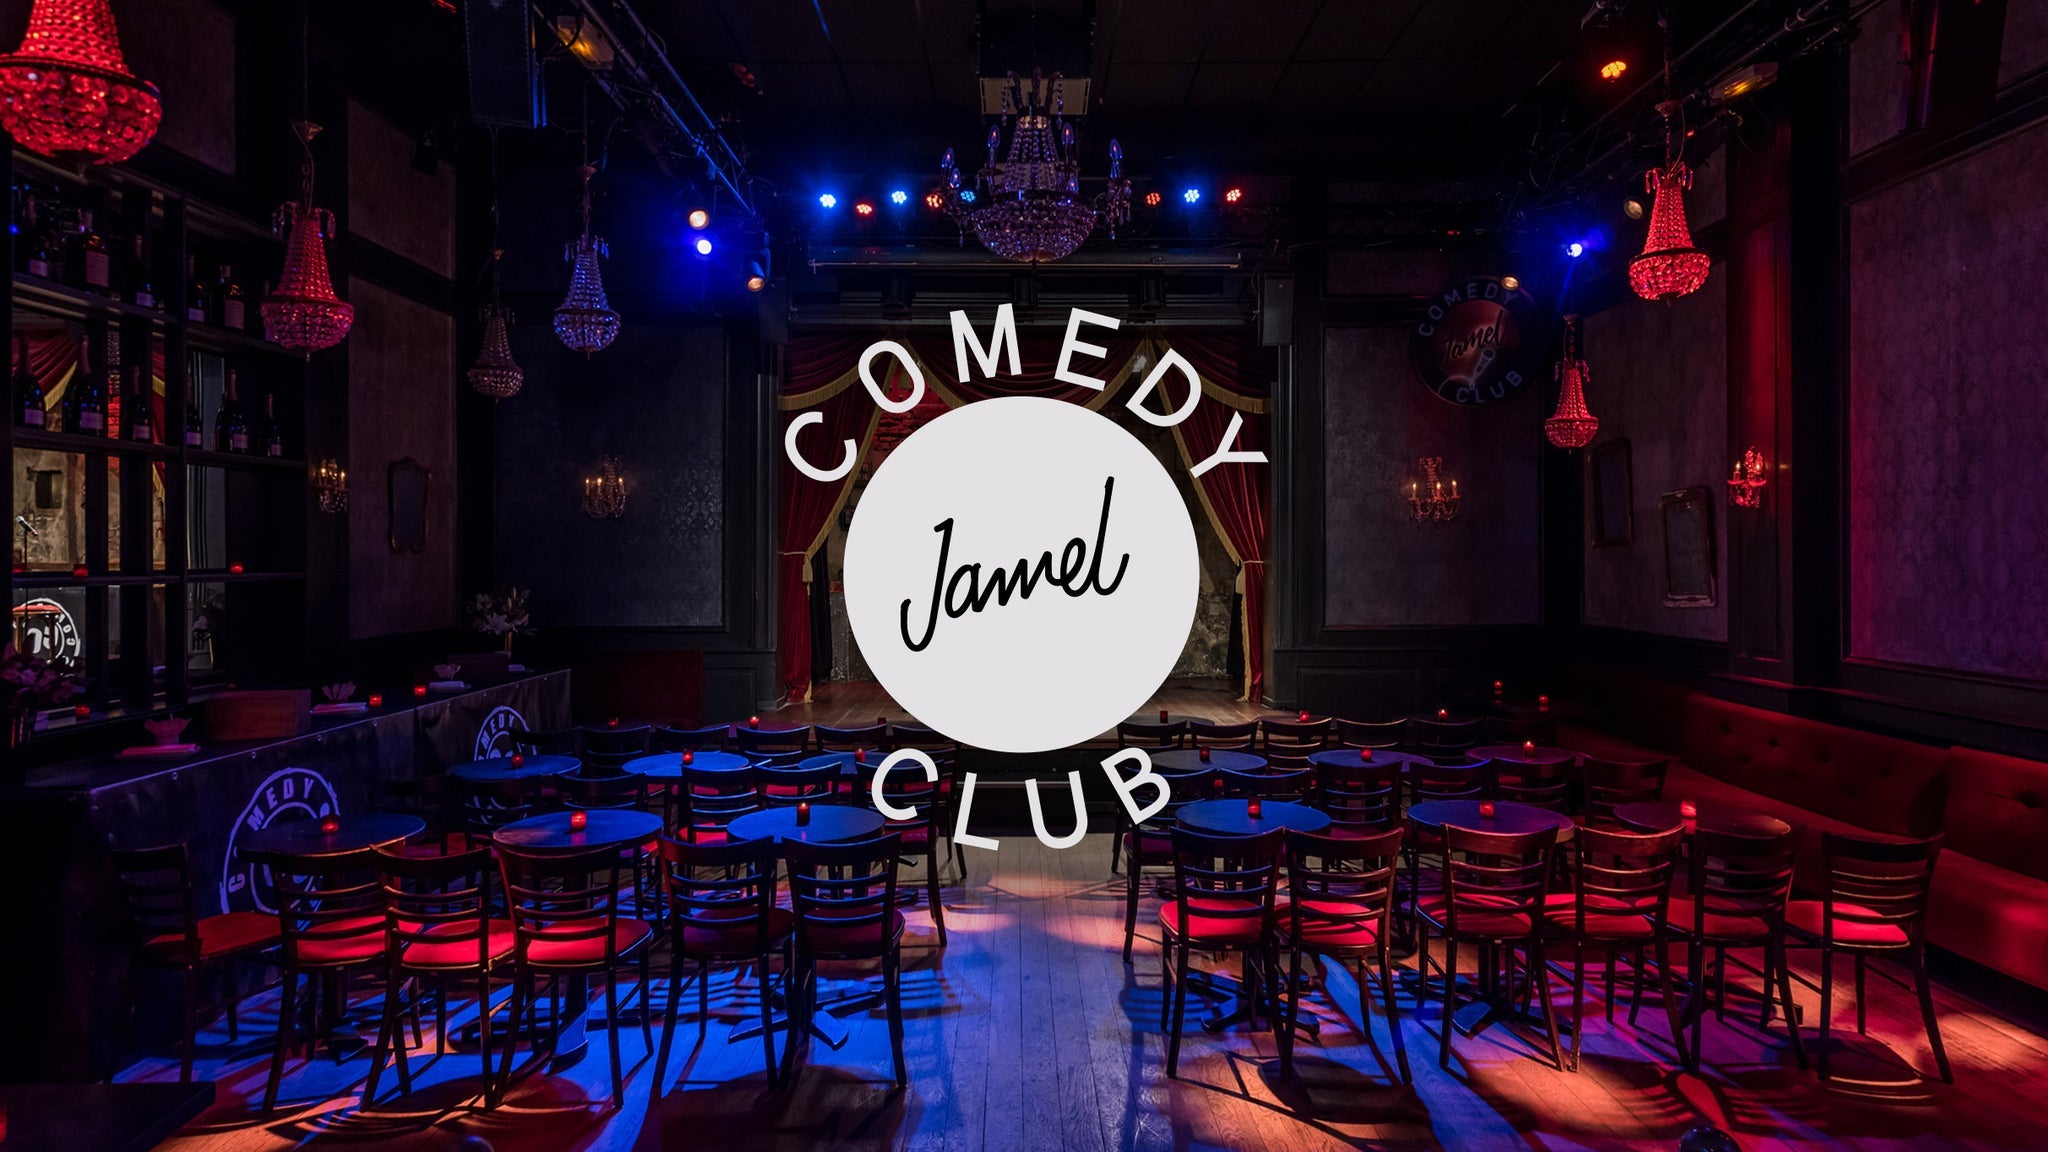 Deuxième édition de la Troupe du Jamel Comedy Club - 19h in Montreal promo photo for Prévente fans de L'Olympia presale offer code